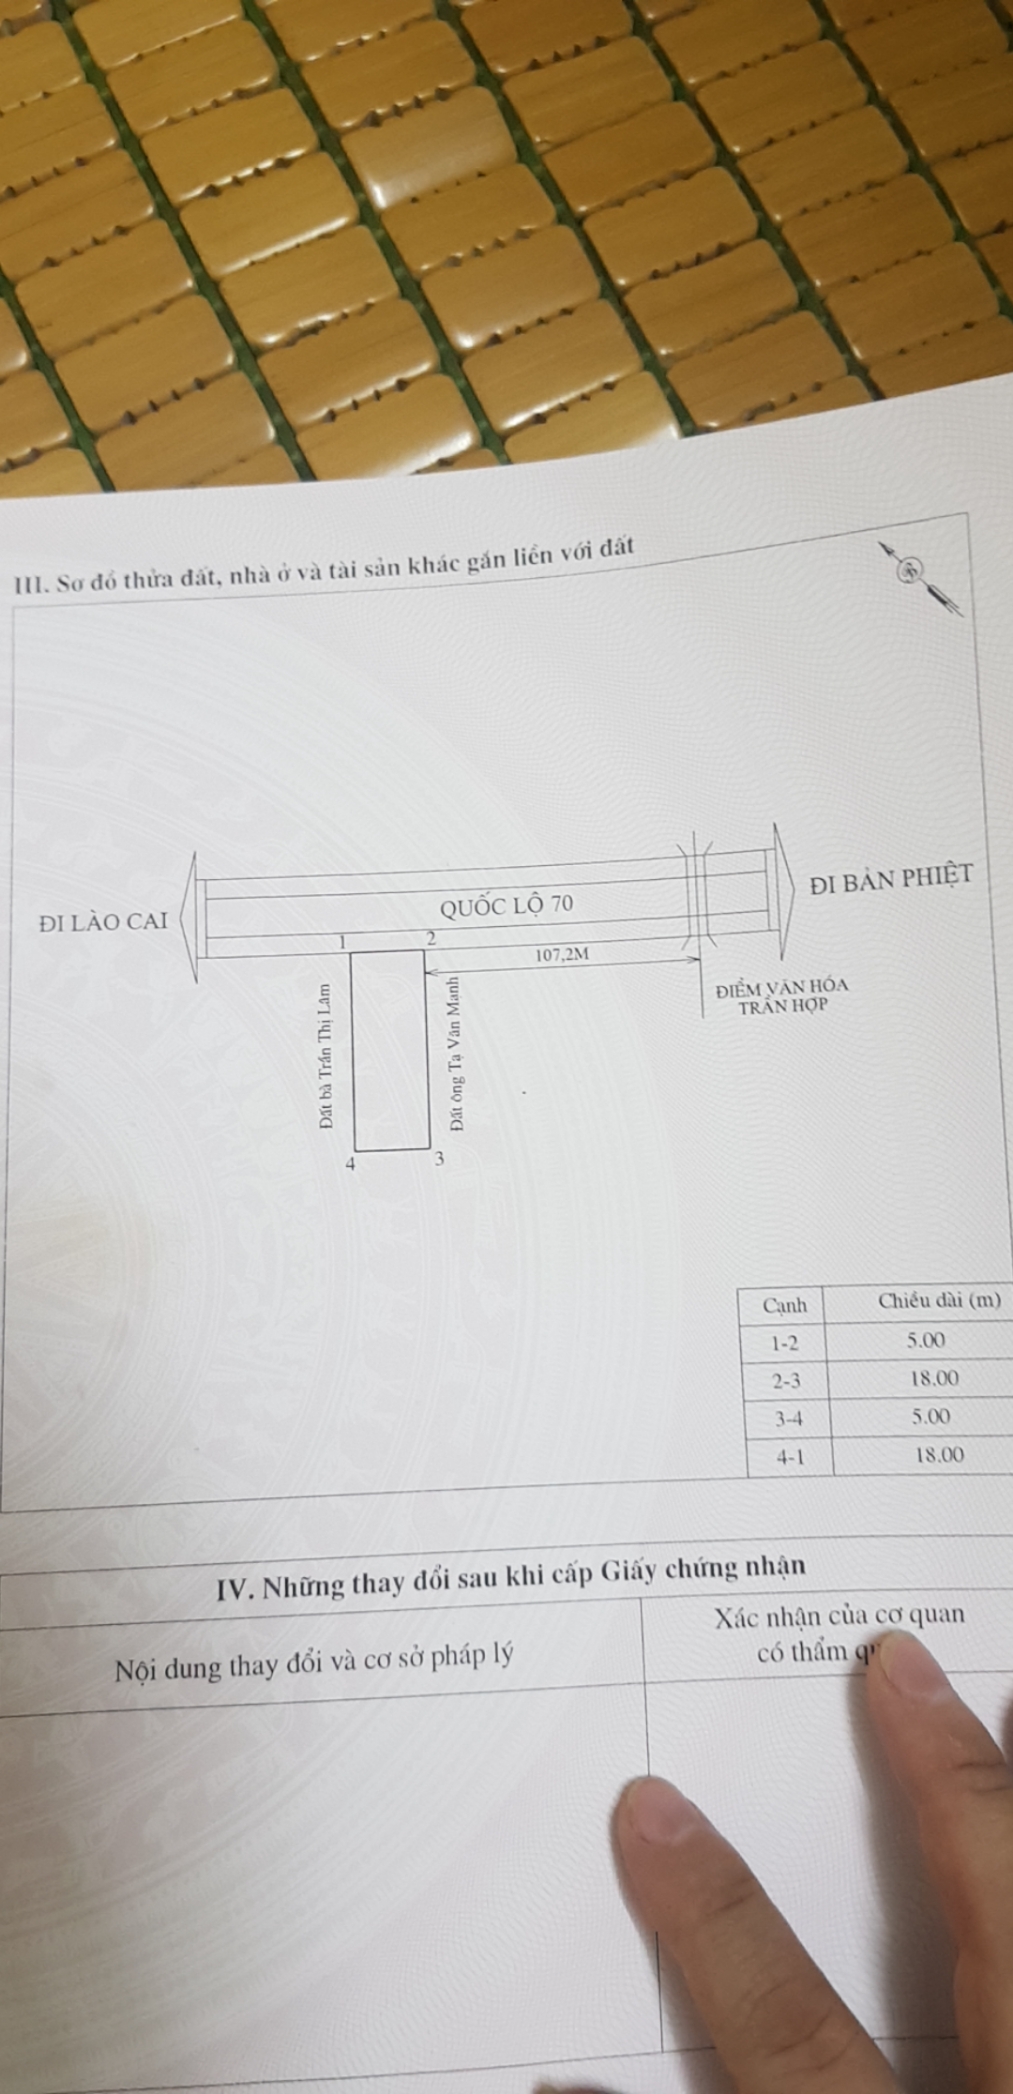 Chính chủ cần bán nhà và đất giá rẻ tại cây 3 QL70 - Lào Cai 11174345